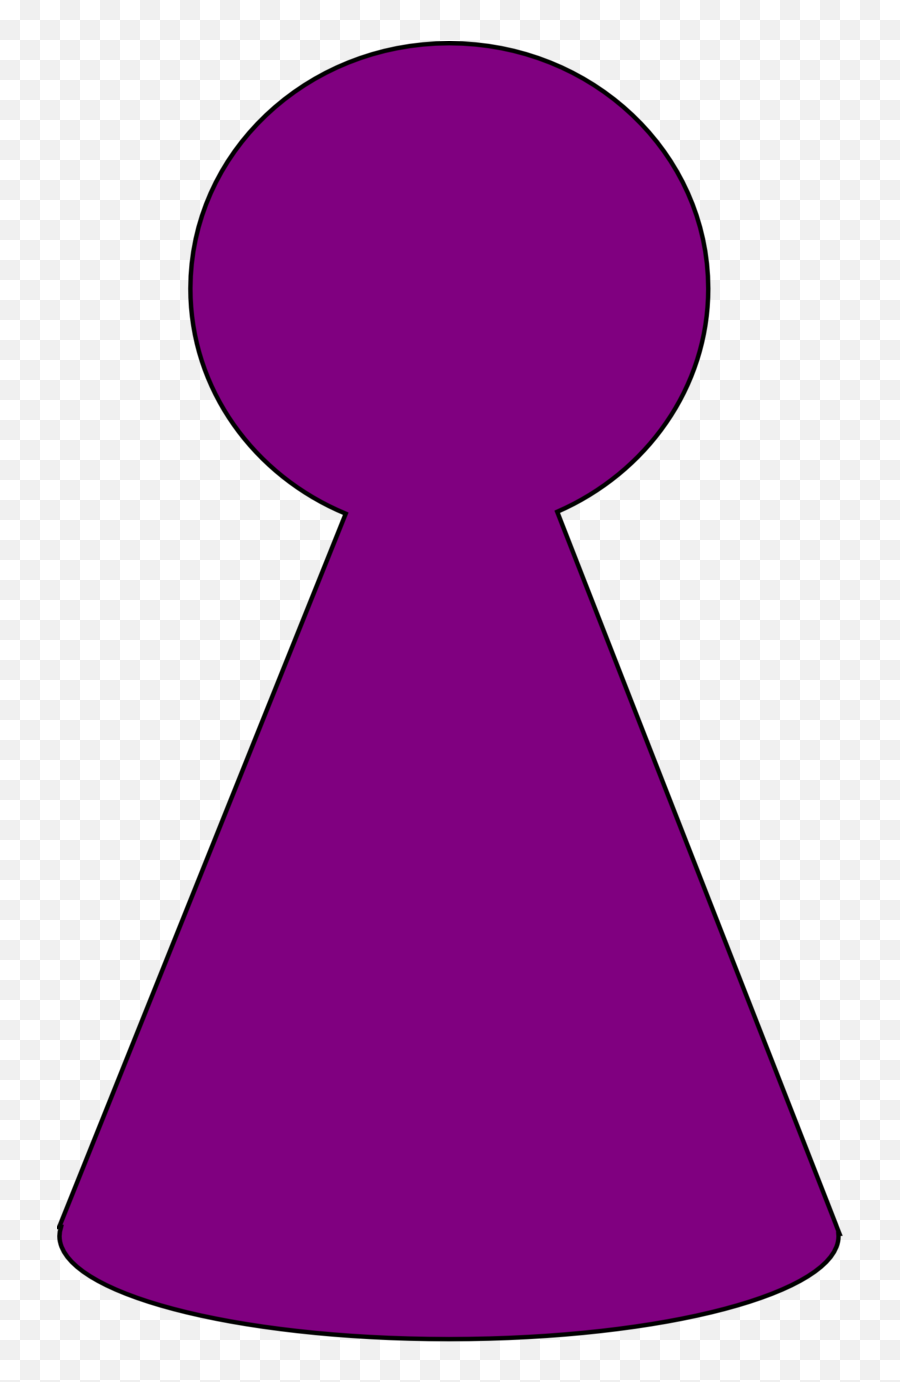 Public Domain Clip Art Image Ludo Piece - Plum Purple Id Game Piece Clipart Png,Plum Icon